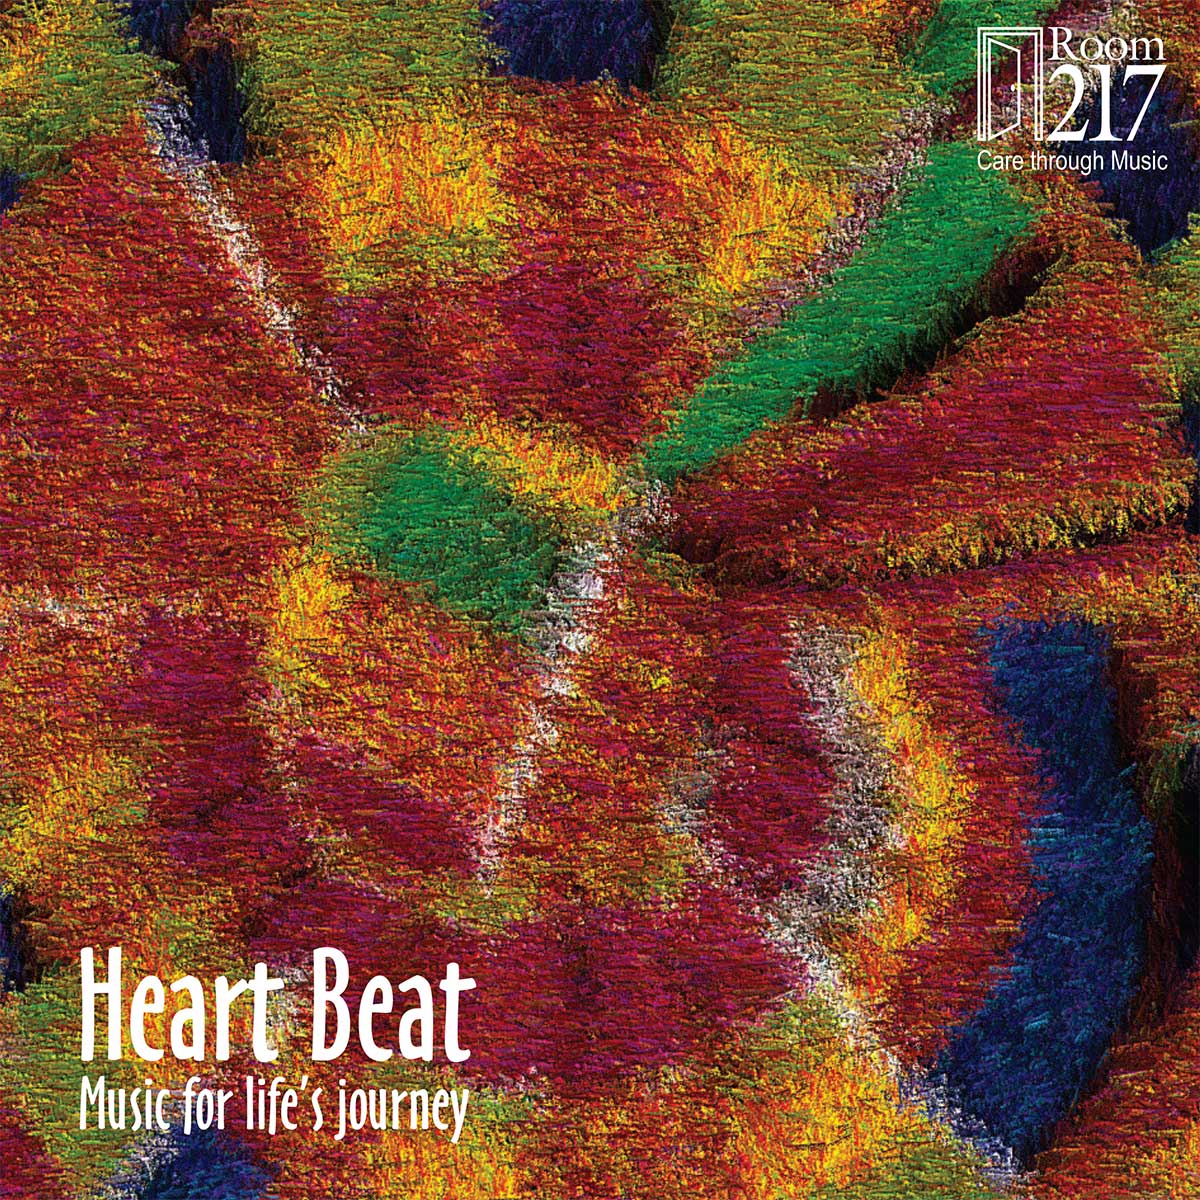 Room 217 – Heart Beat - Album art